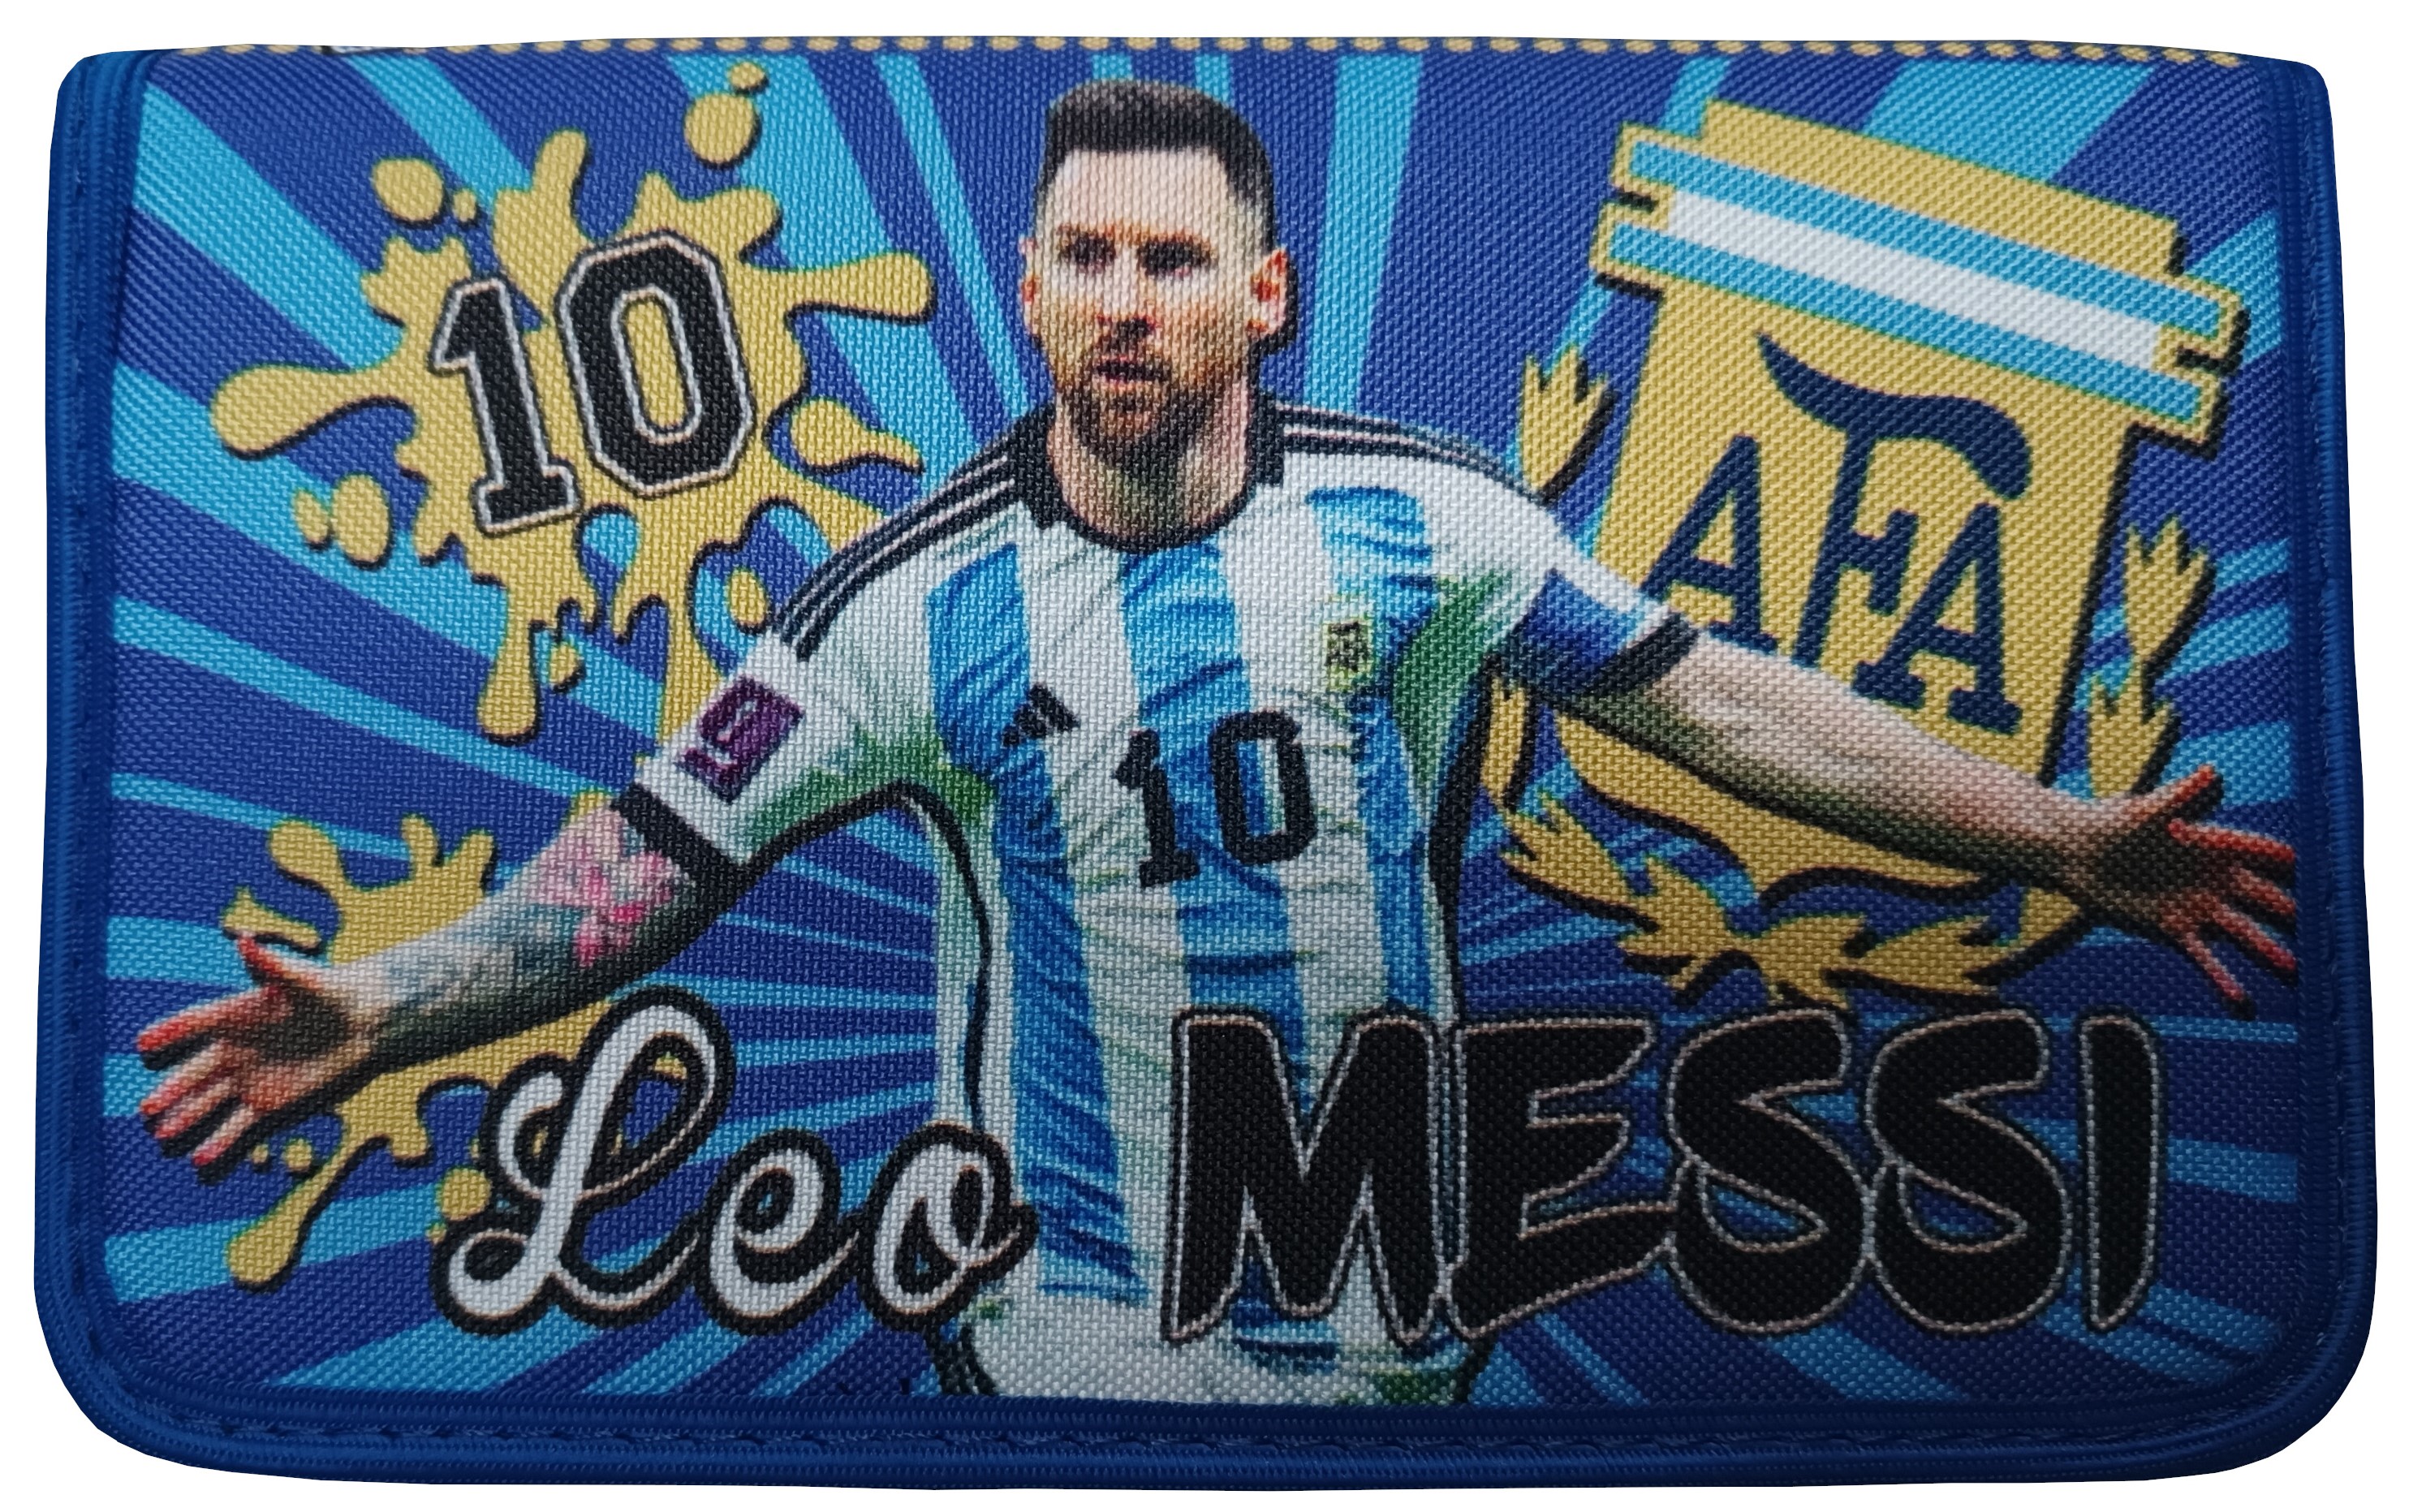 Školní penál Messi Argentina